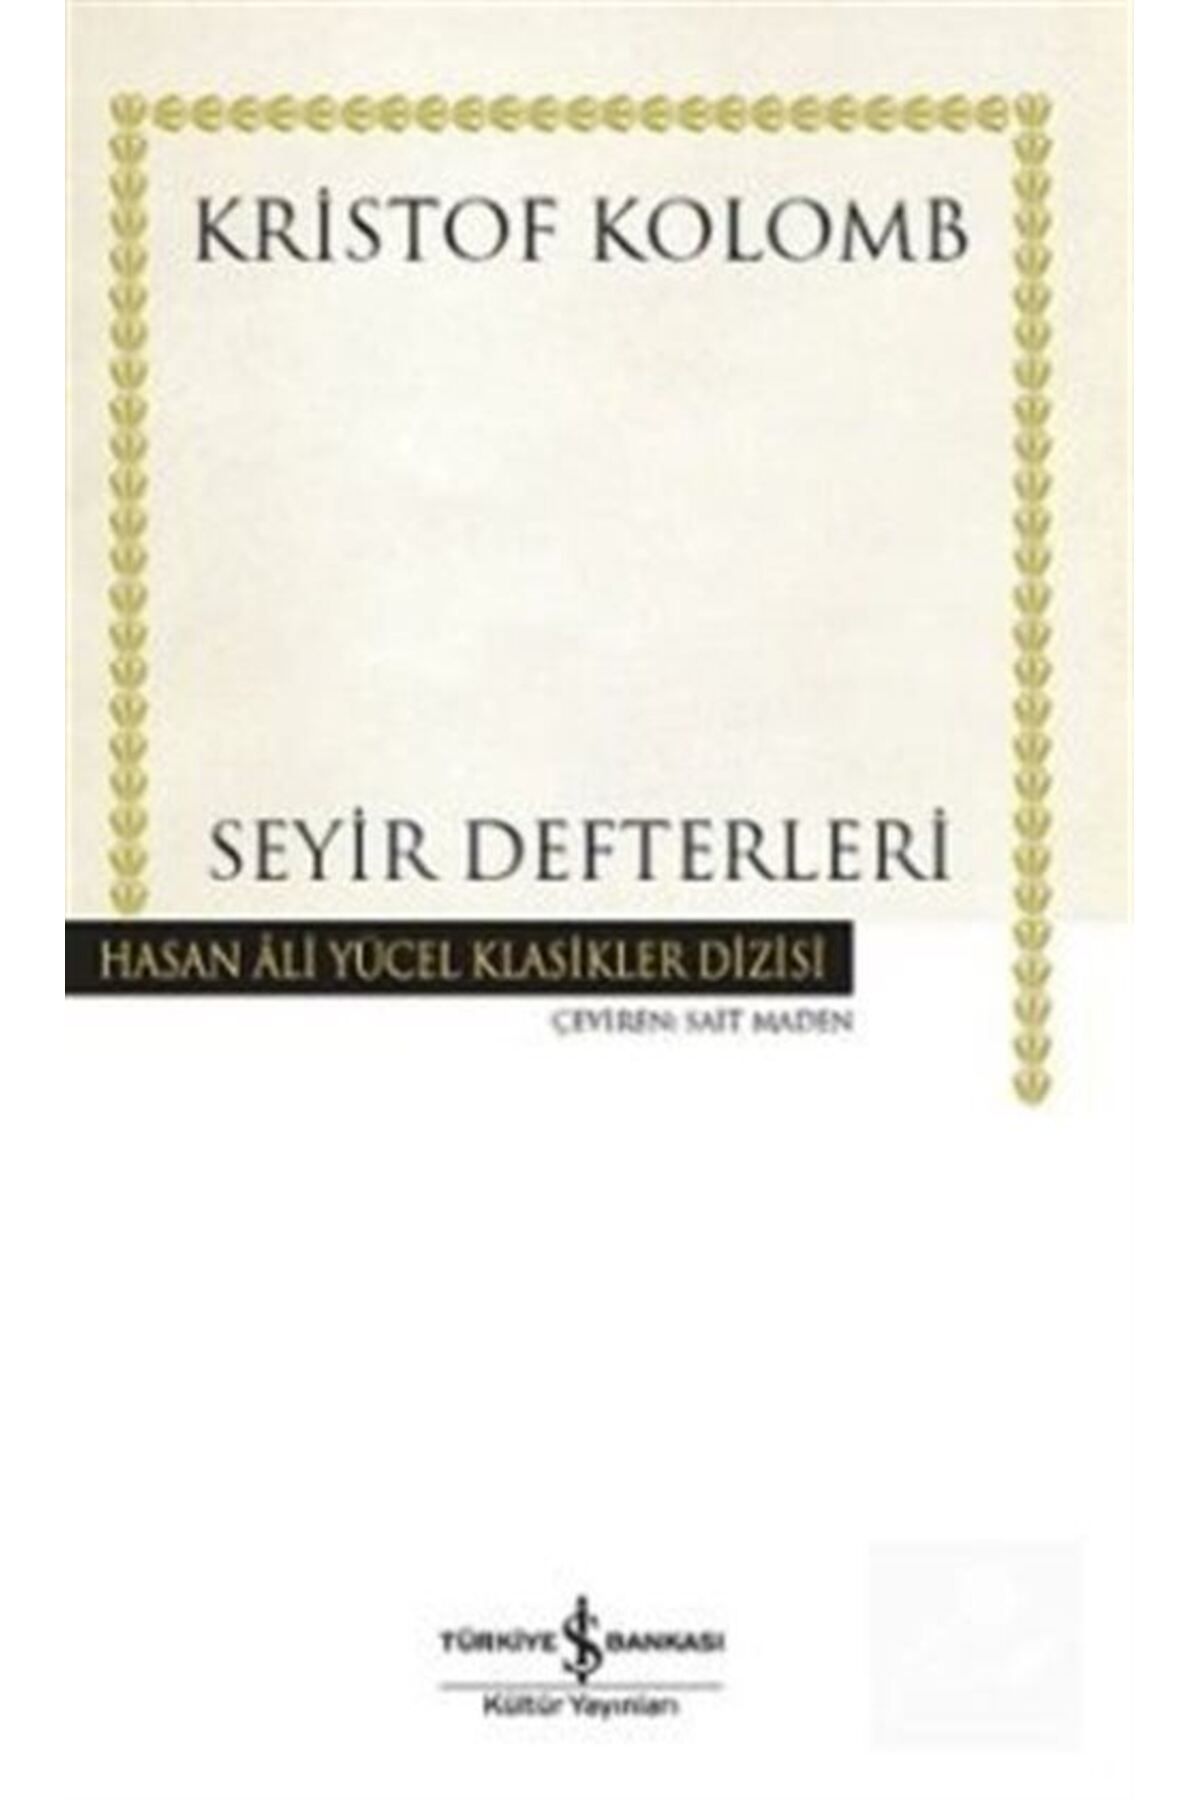 Türkiye İş Bankası Kültür Yayınları Seyir Defterleri (KARTON KAPAK)